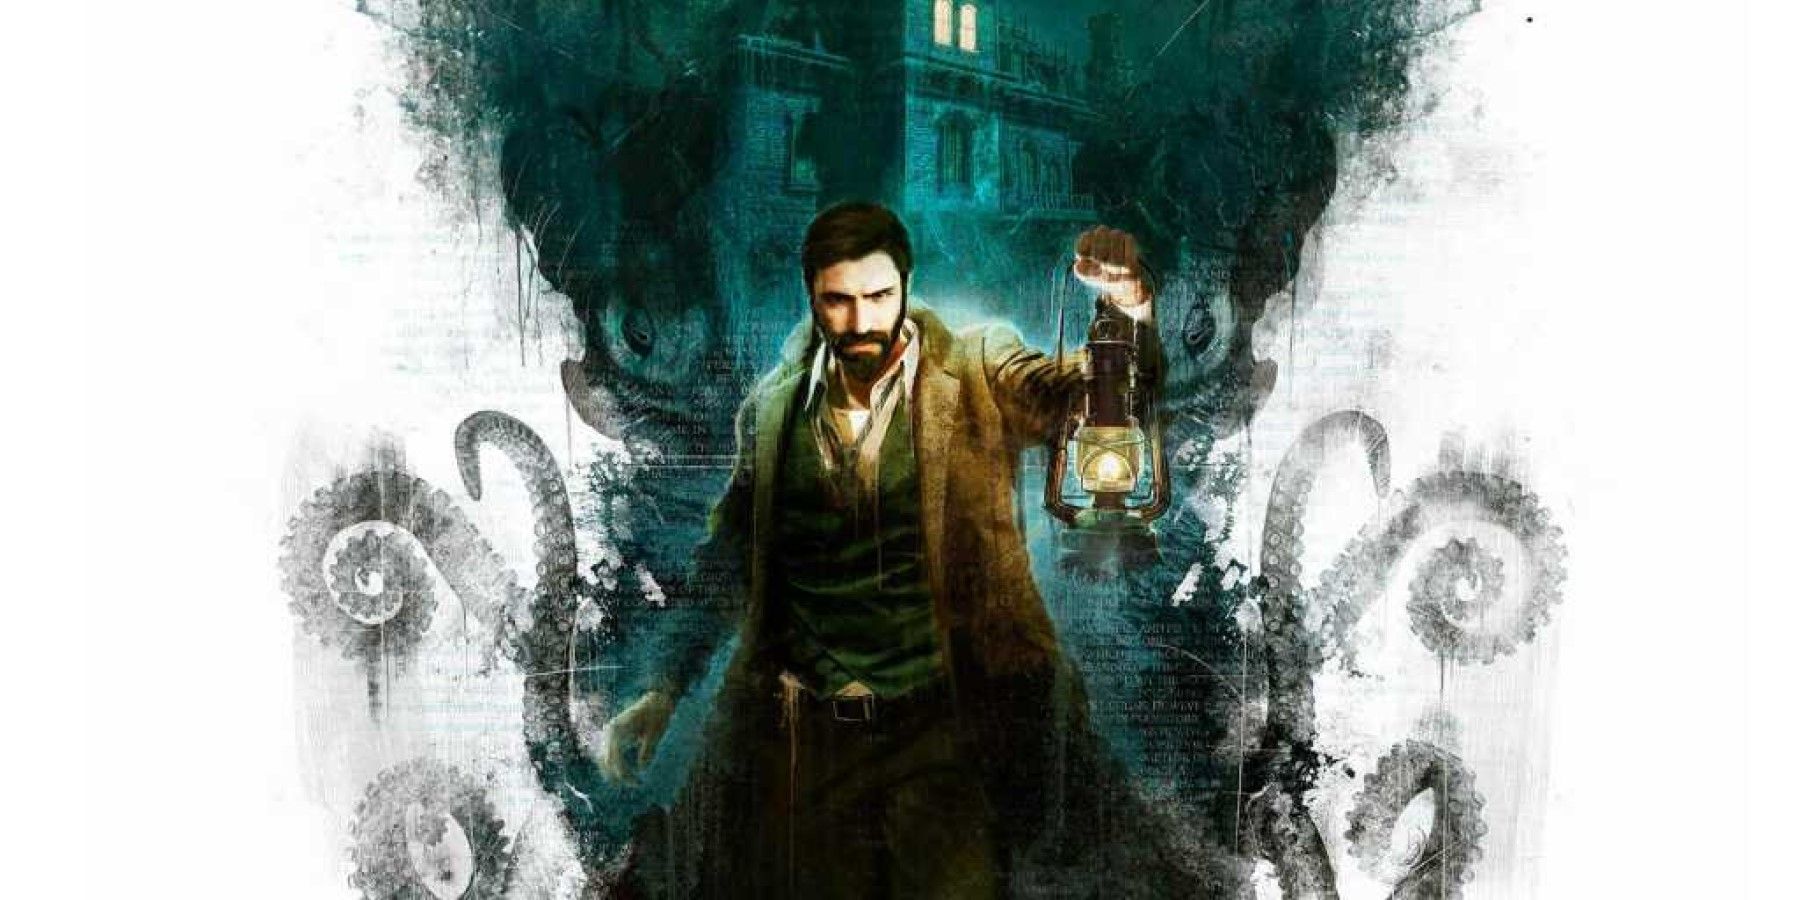 H.P. Lovecraftin vaikutus pelaamiseen selitettiin